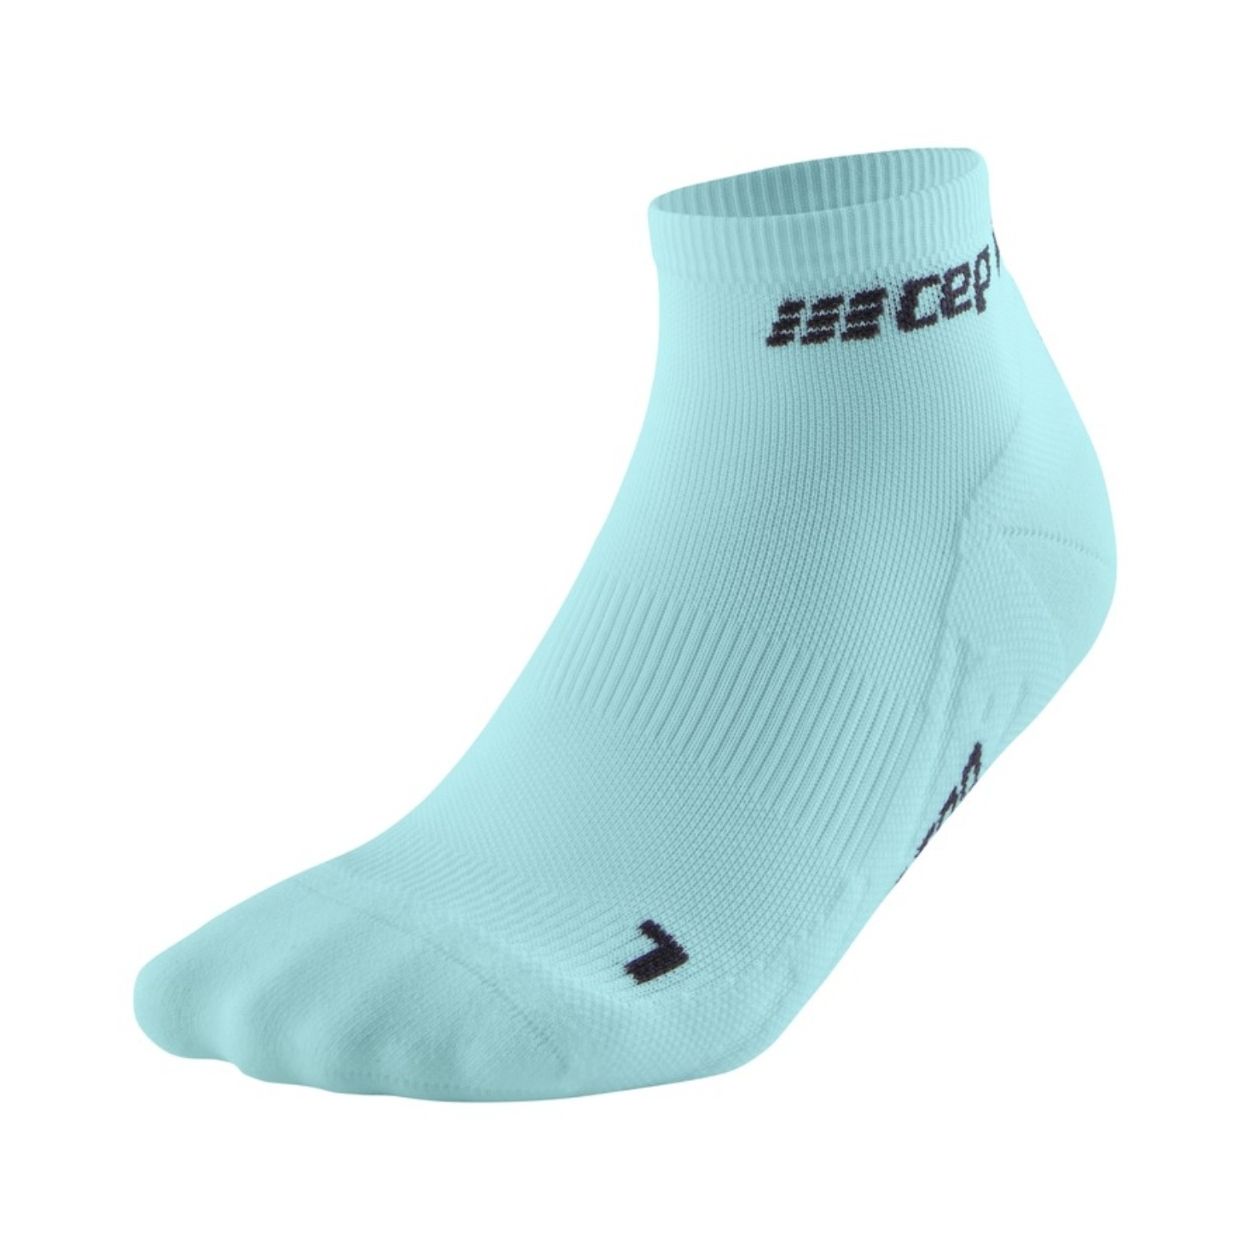 CEP The Run Compression Socks - Low Cut, Damen, hellblau